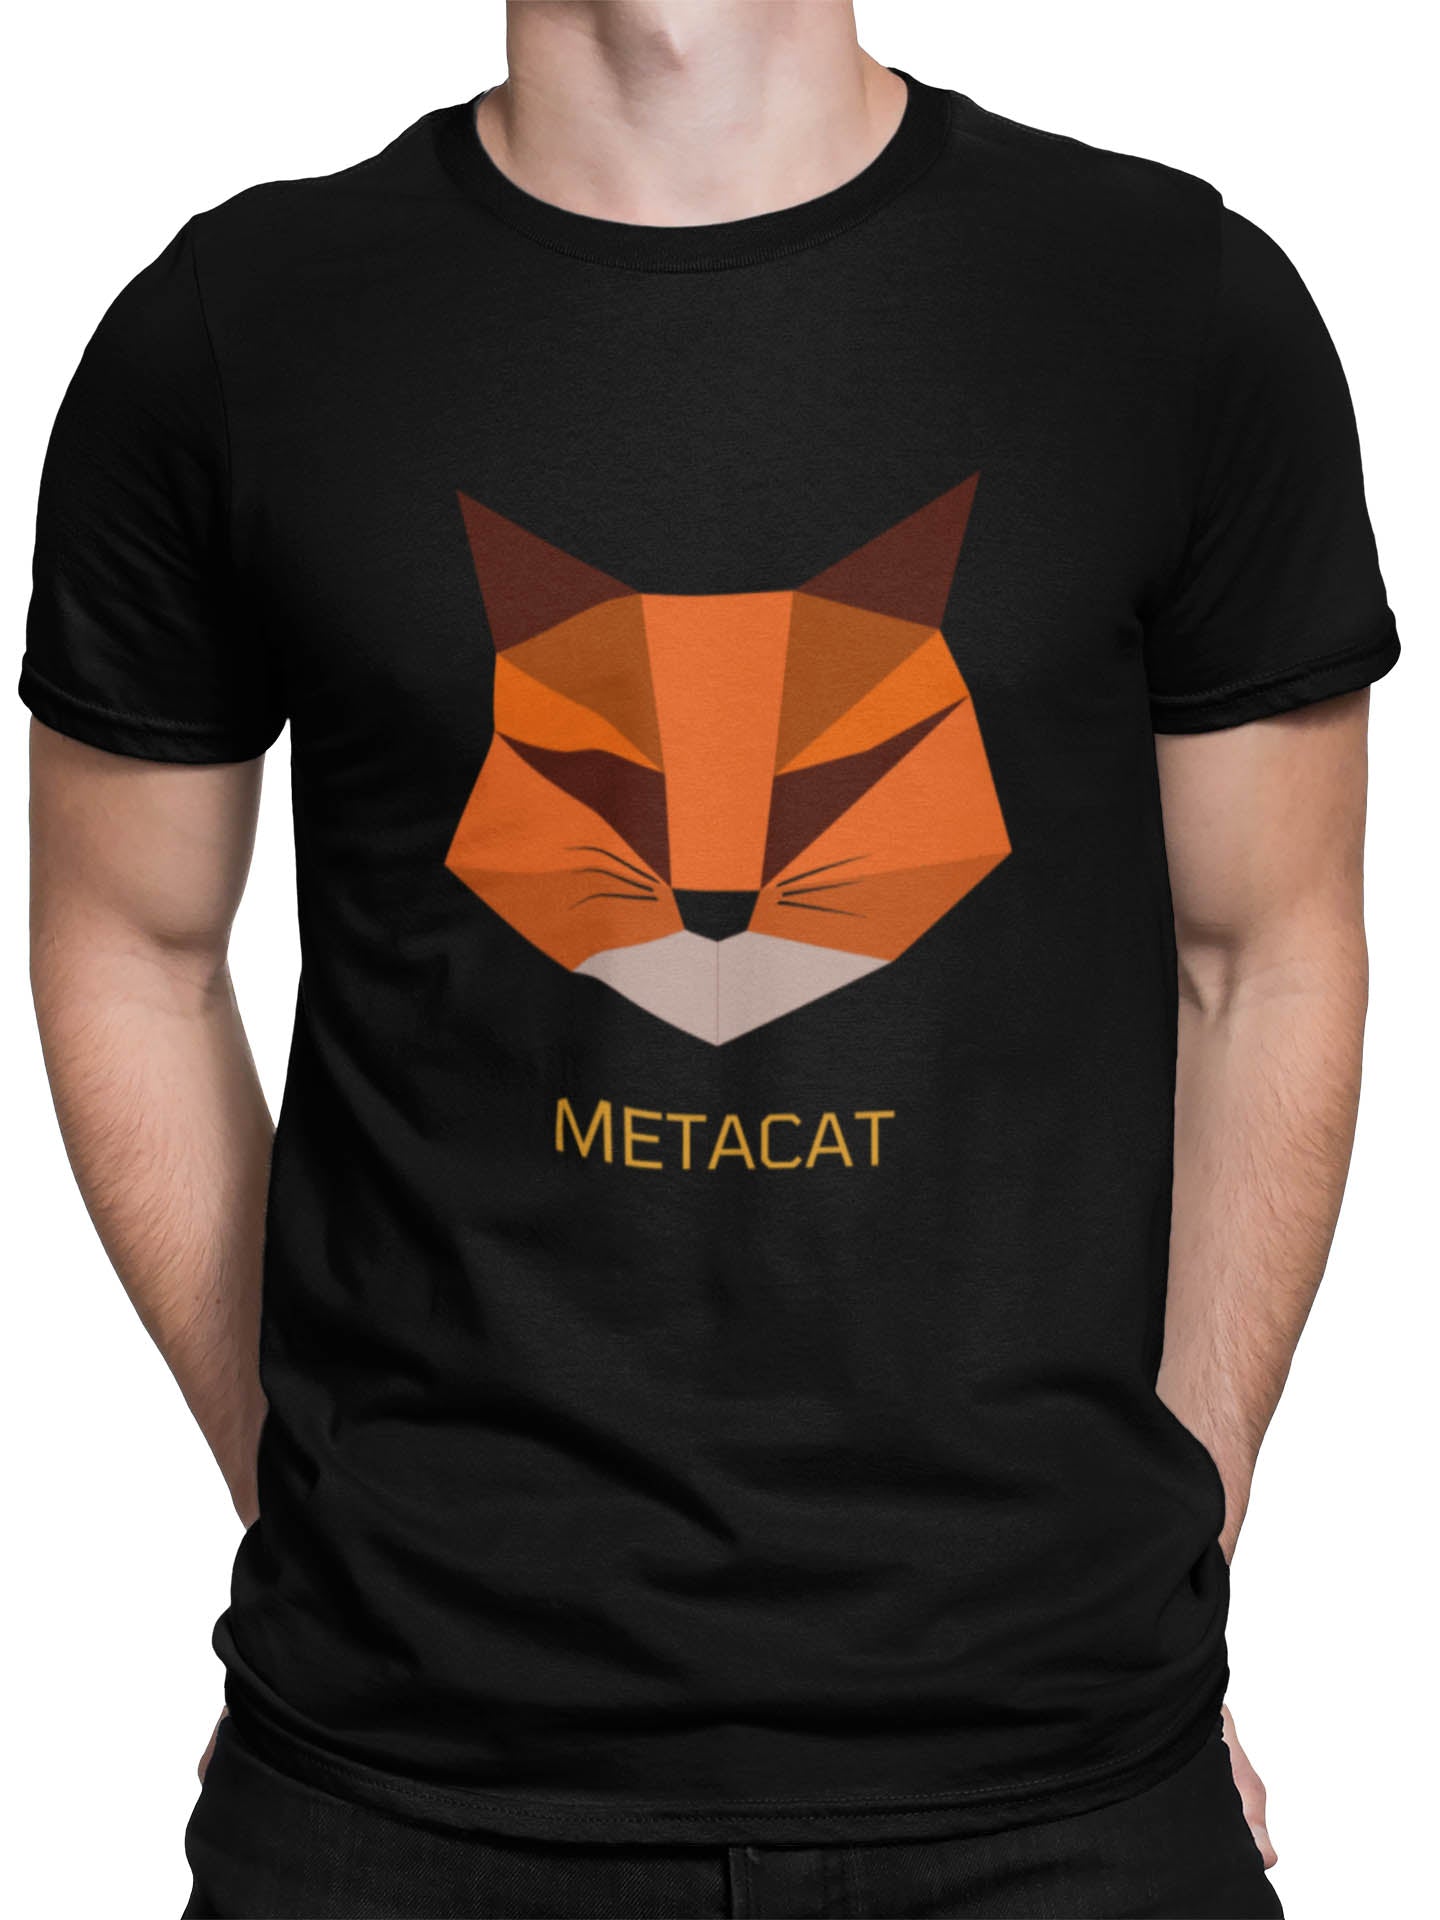 Metacat Tee